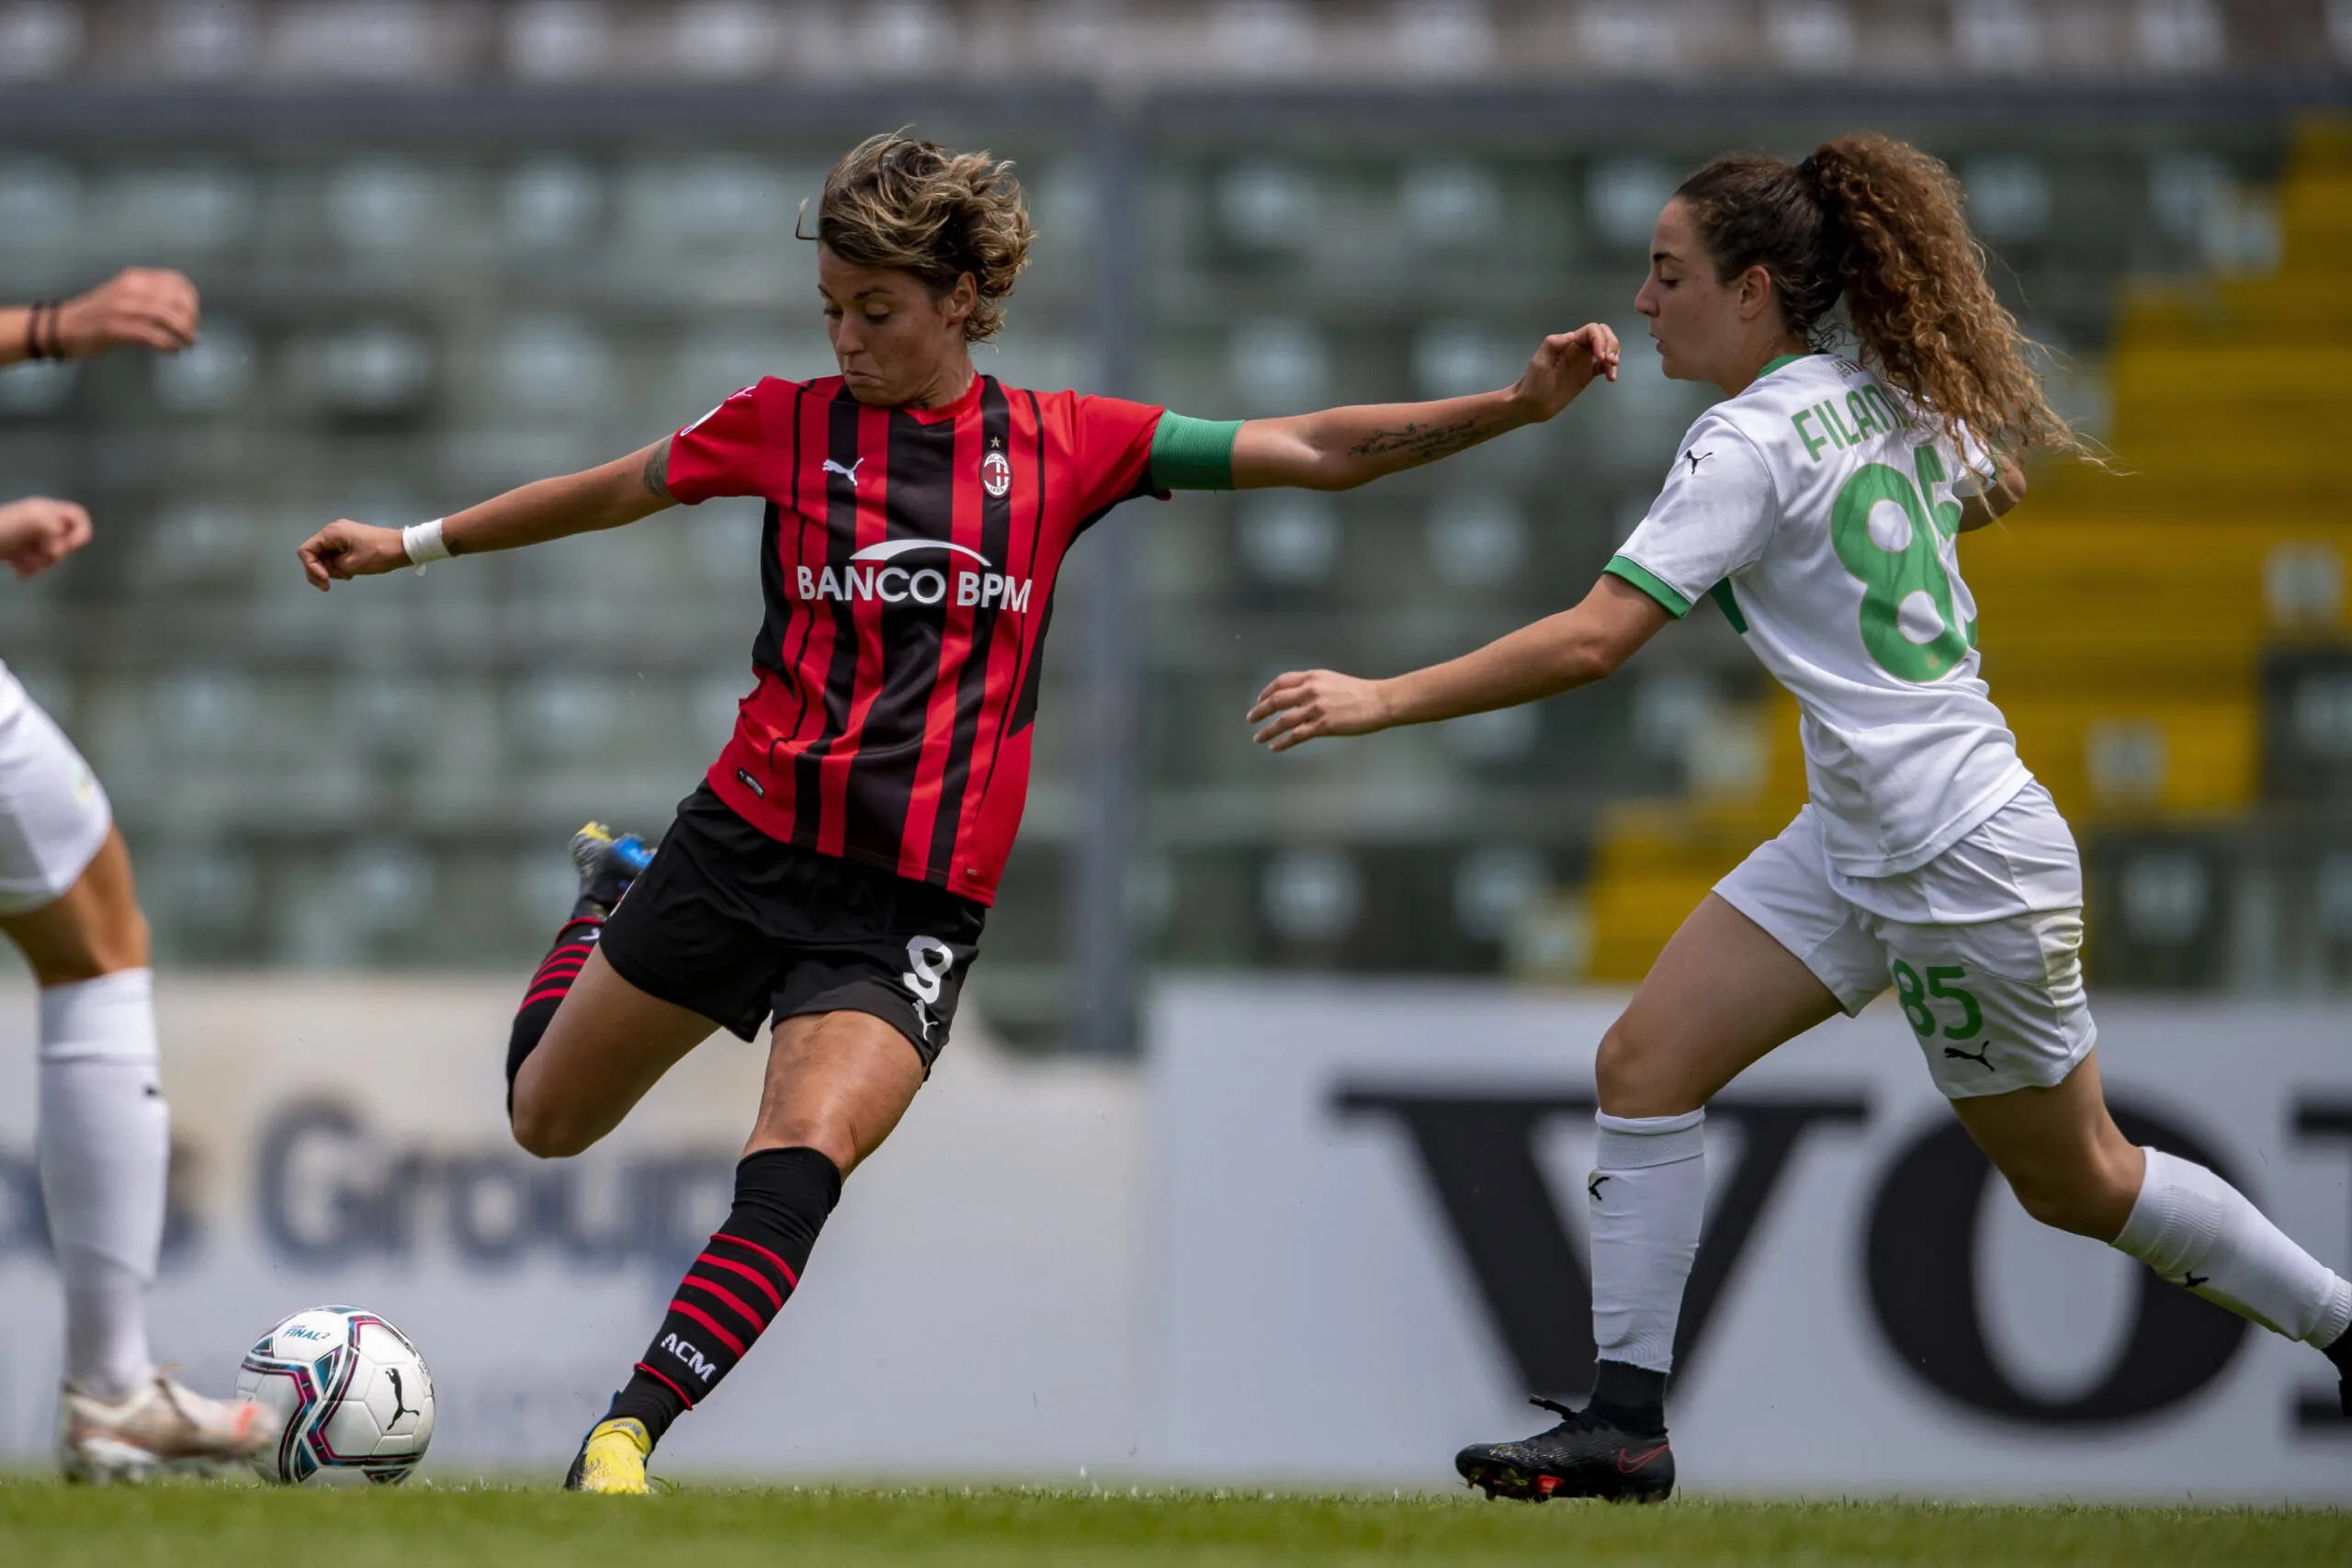 Svolta nel calcio femminile verso il professionismo: Serie A a 10 squadre dal 2022-23